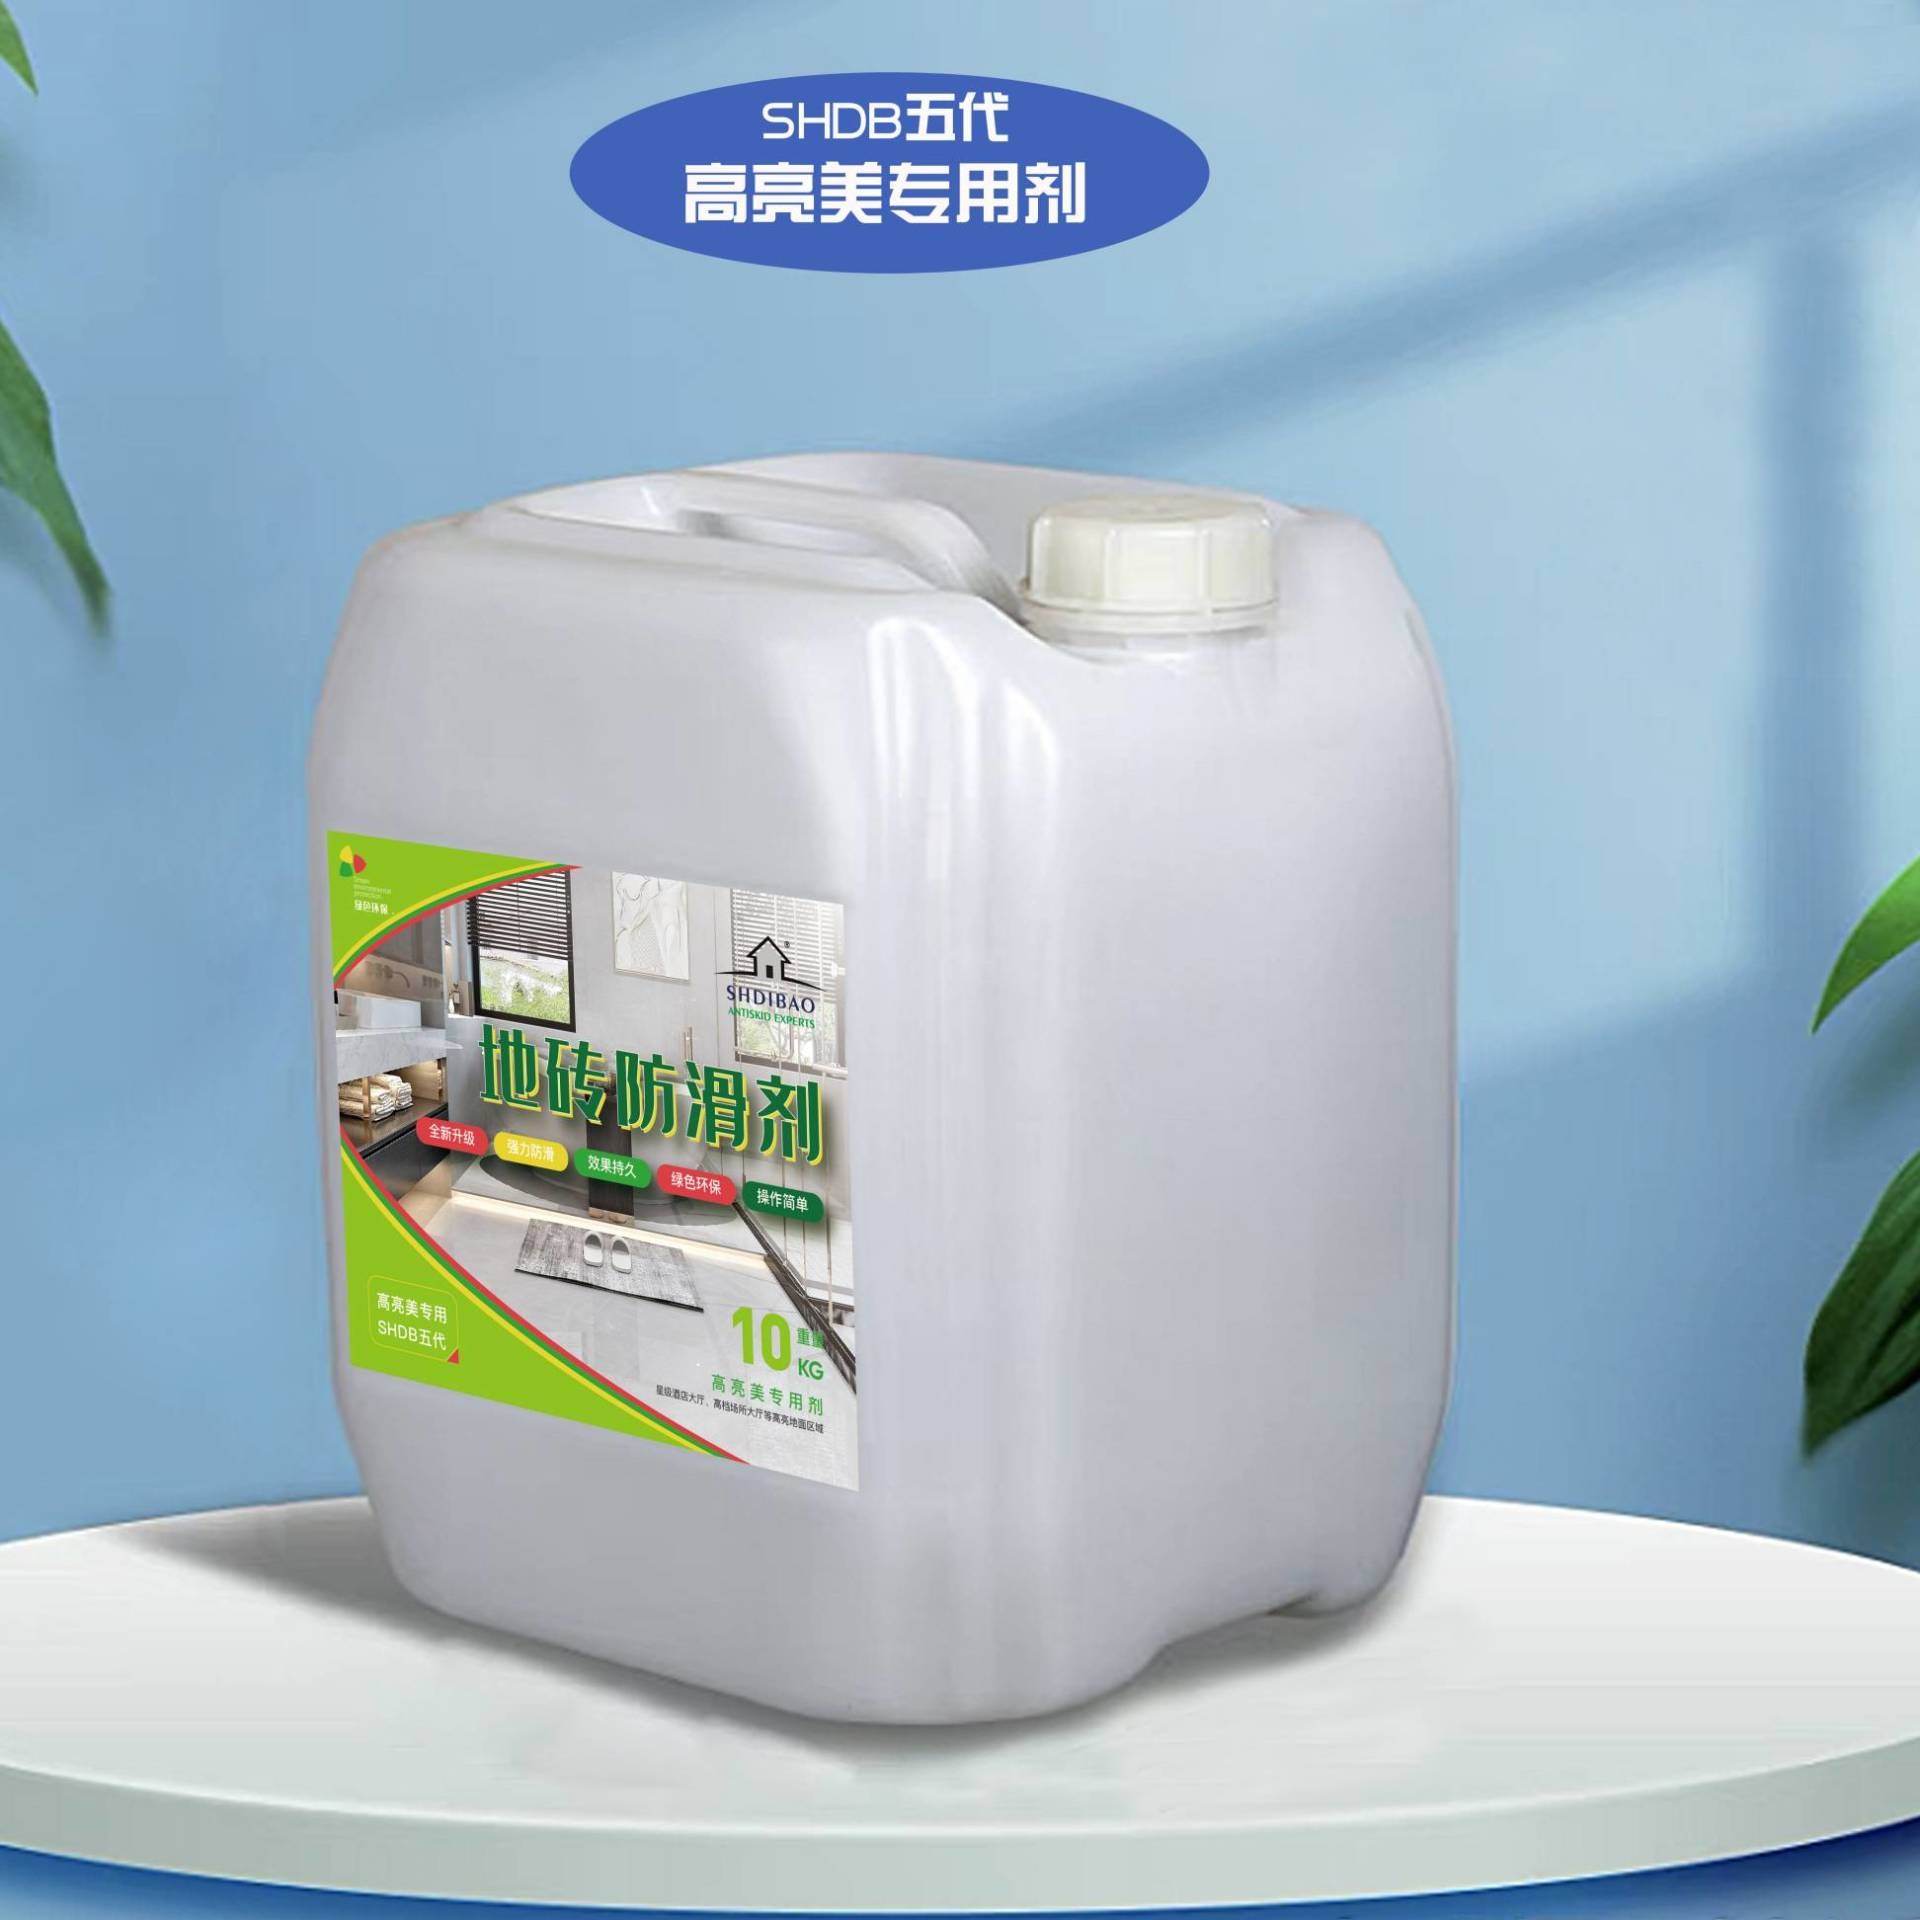 地面防滑剂 地宝五代高亮美防滑剂SHDIBAO-20 上海地宝厂商价格 防滑液厂家